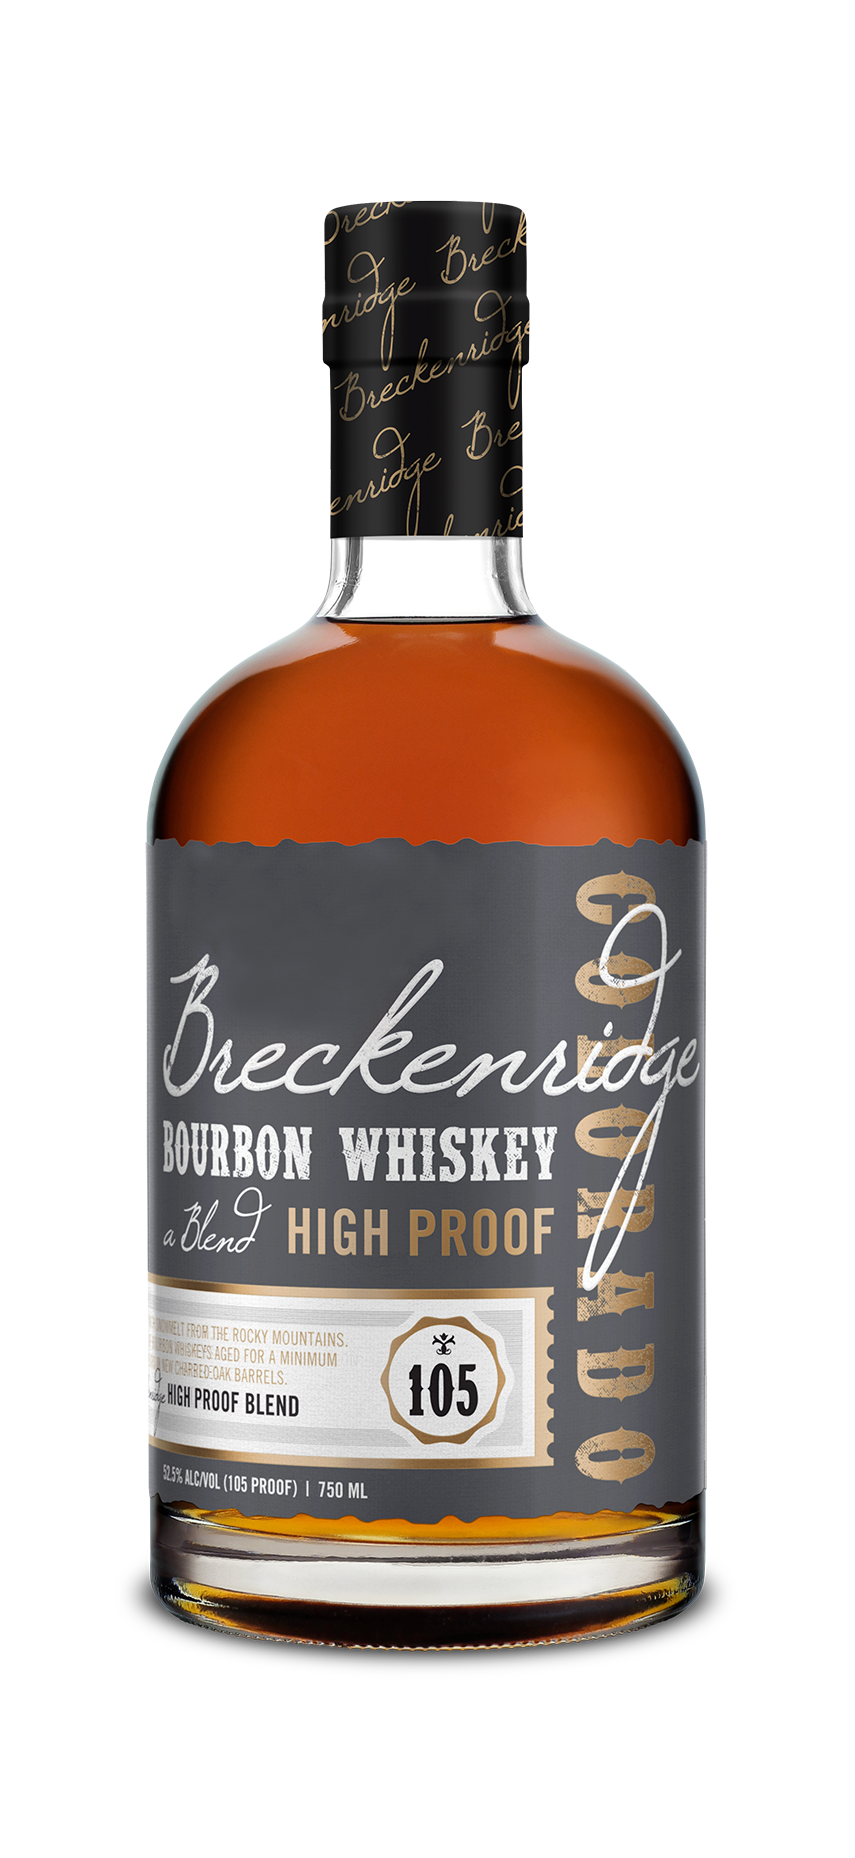 World’s Best Blended: Breckenridge, High Proof Bourbon Whiskey  